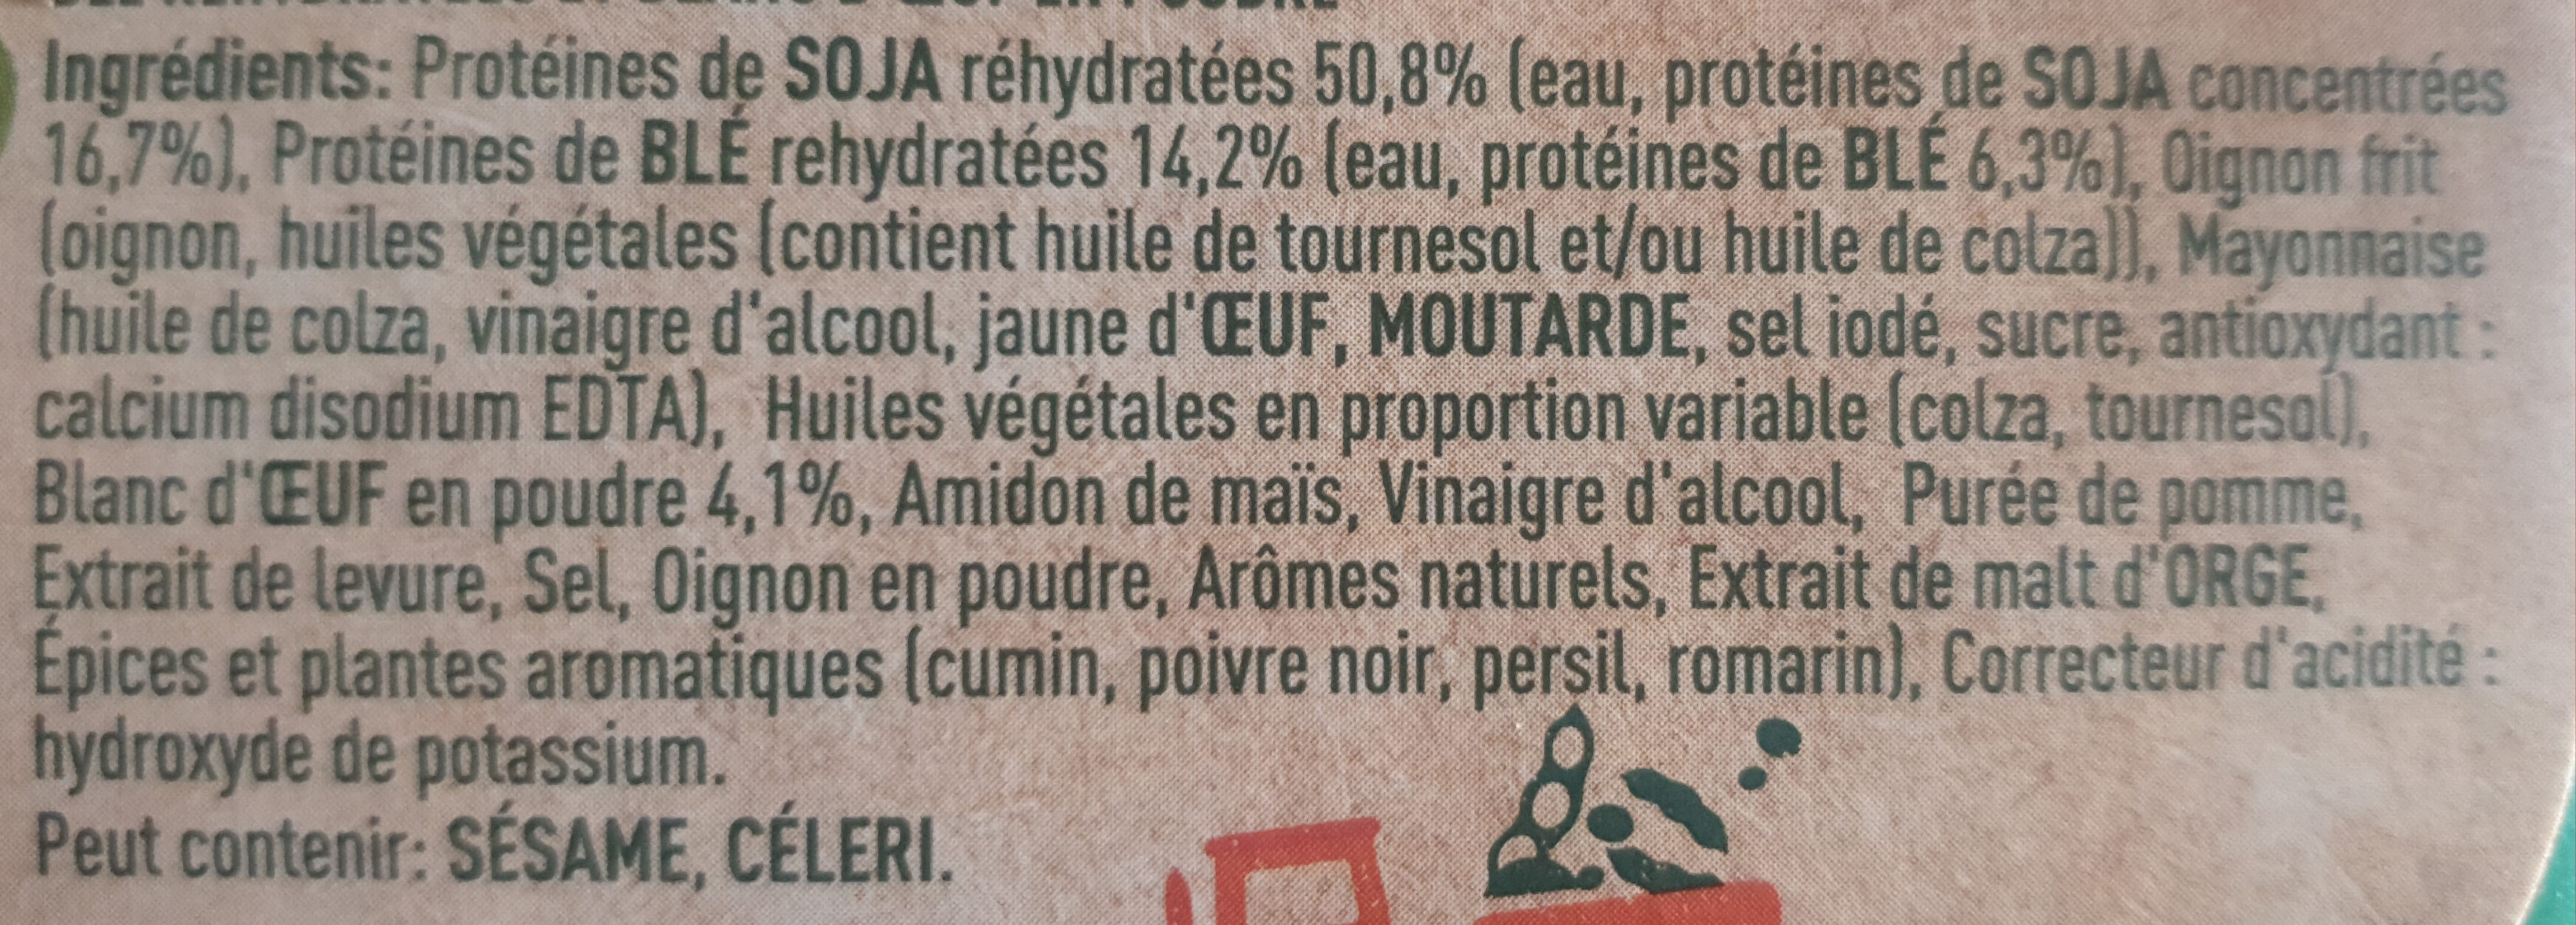 GARDEN GOURMET Le Classique Soja et Blé 150g - Ingredients - fr